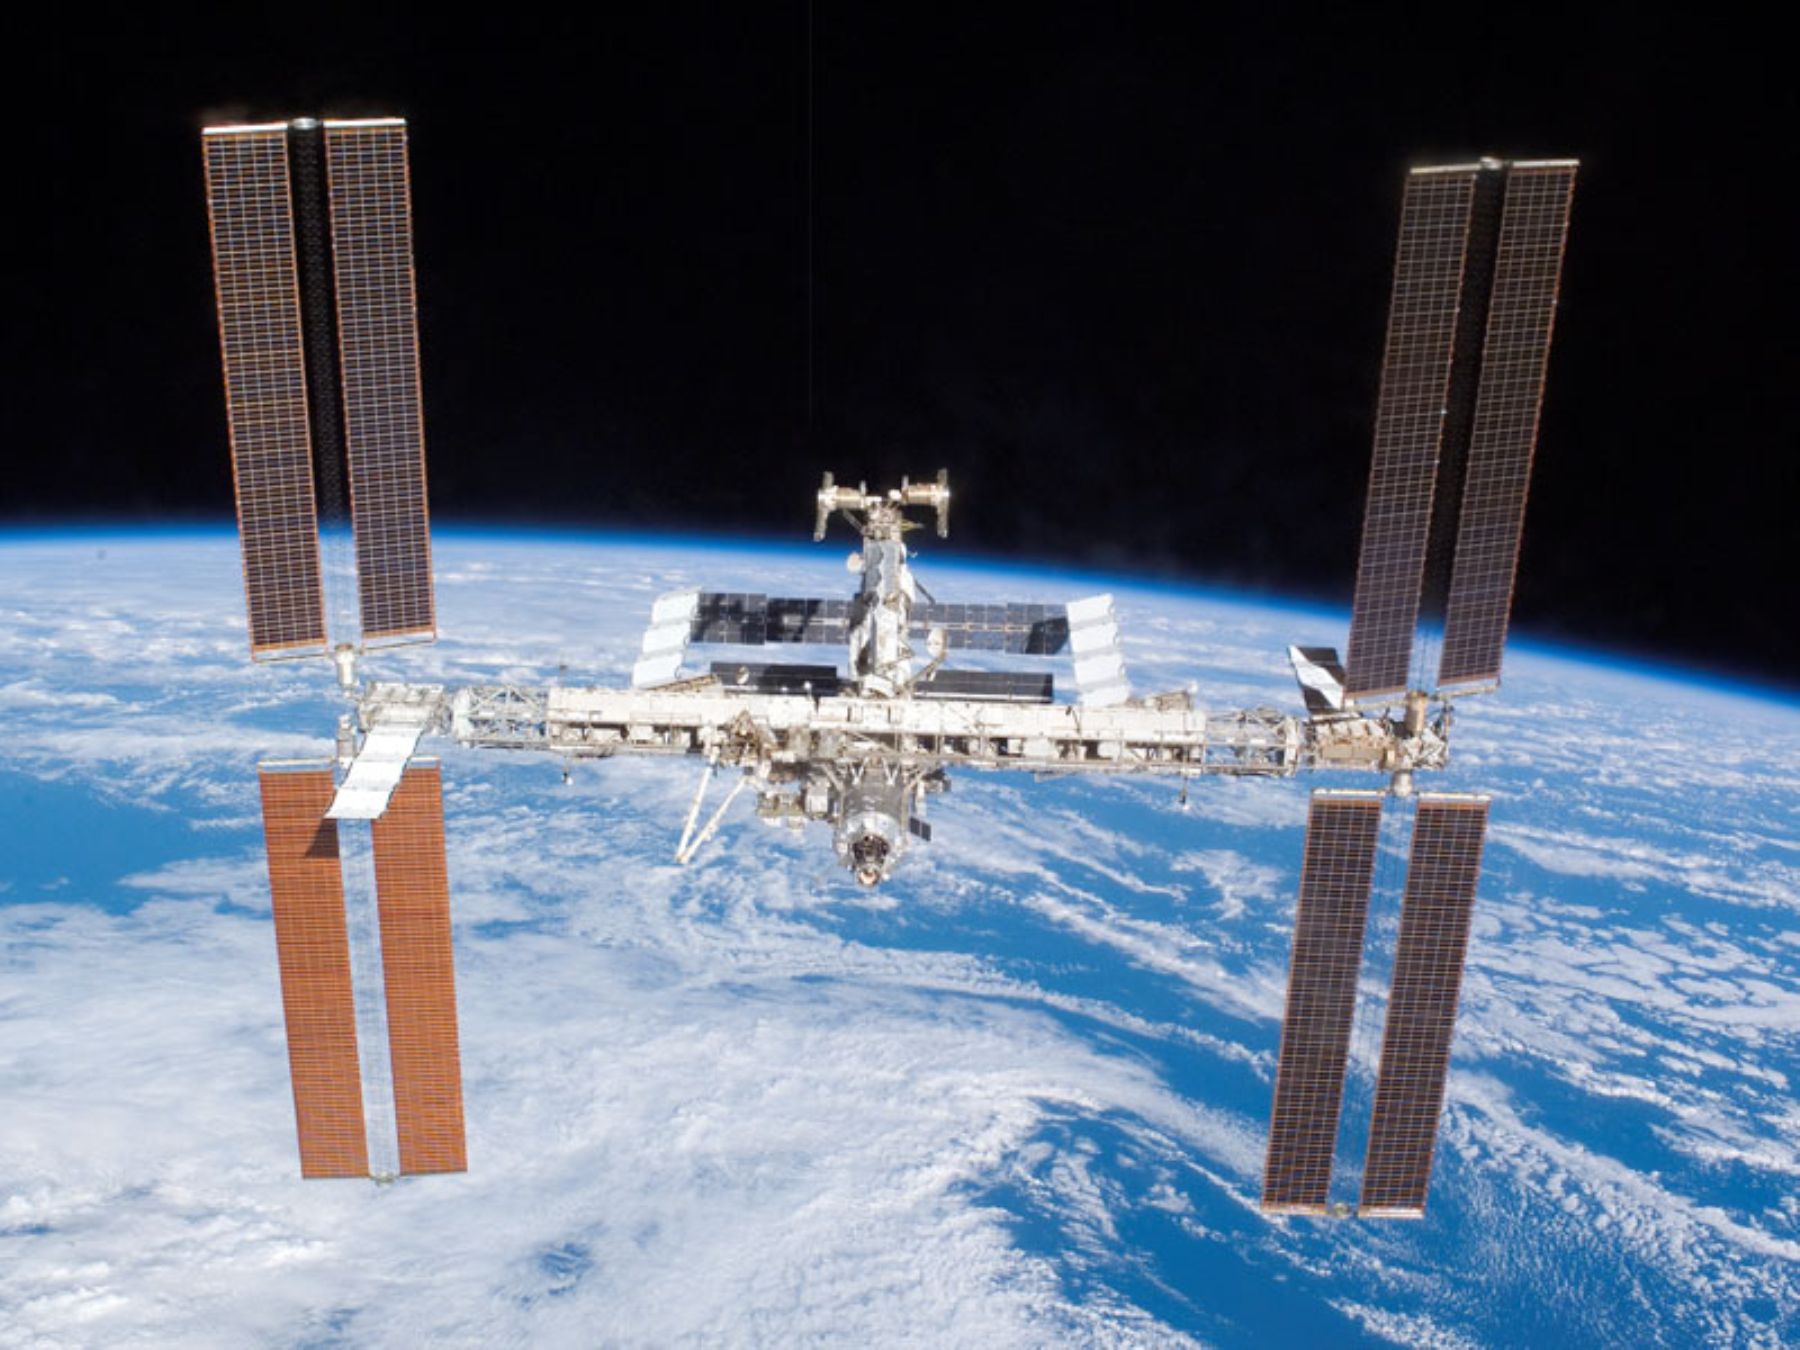 Este 8 de febrero, luego de aproximadamente las 7:33 pm, tendremos la oportunidad de observar la Estación Espacial Internacional (EEI)